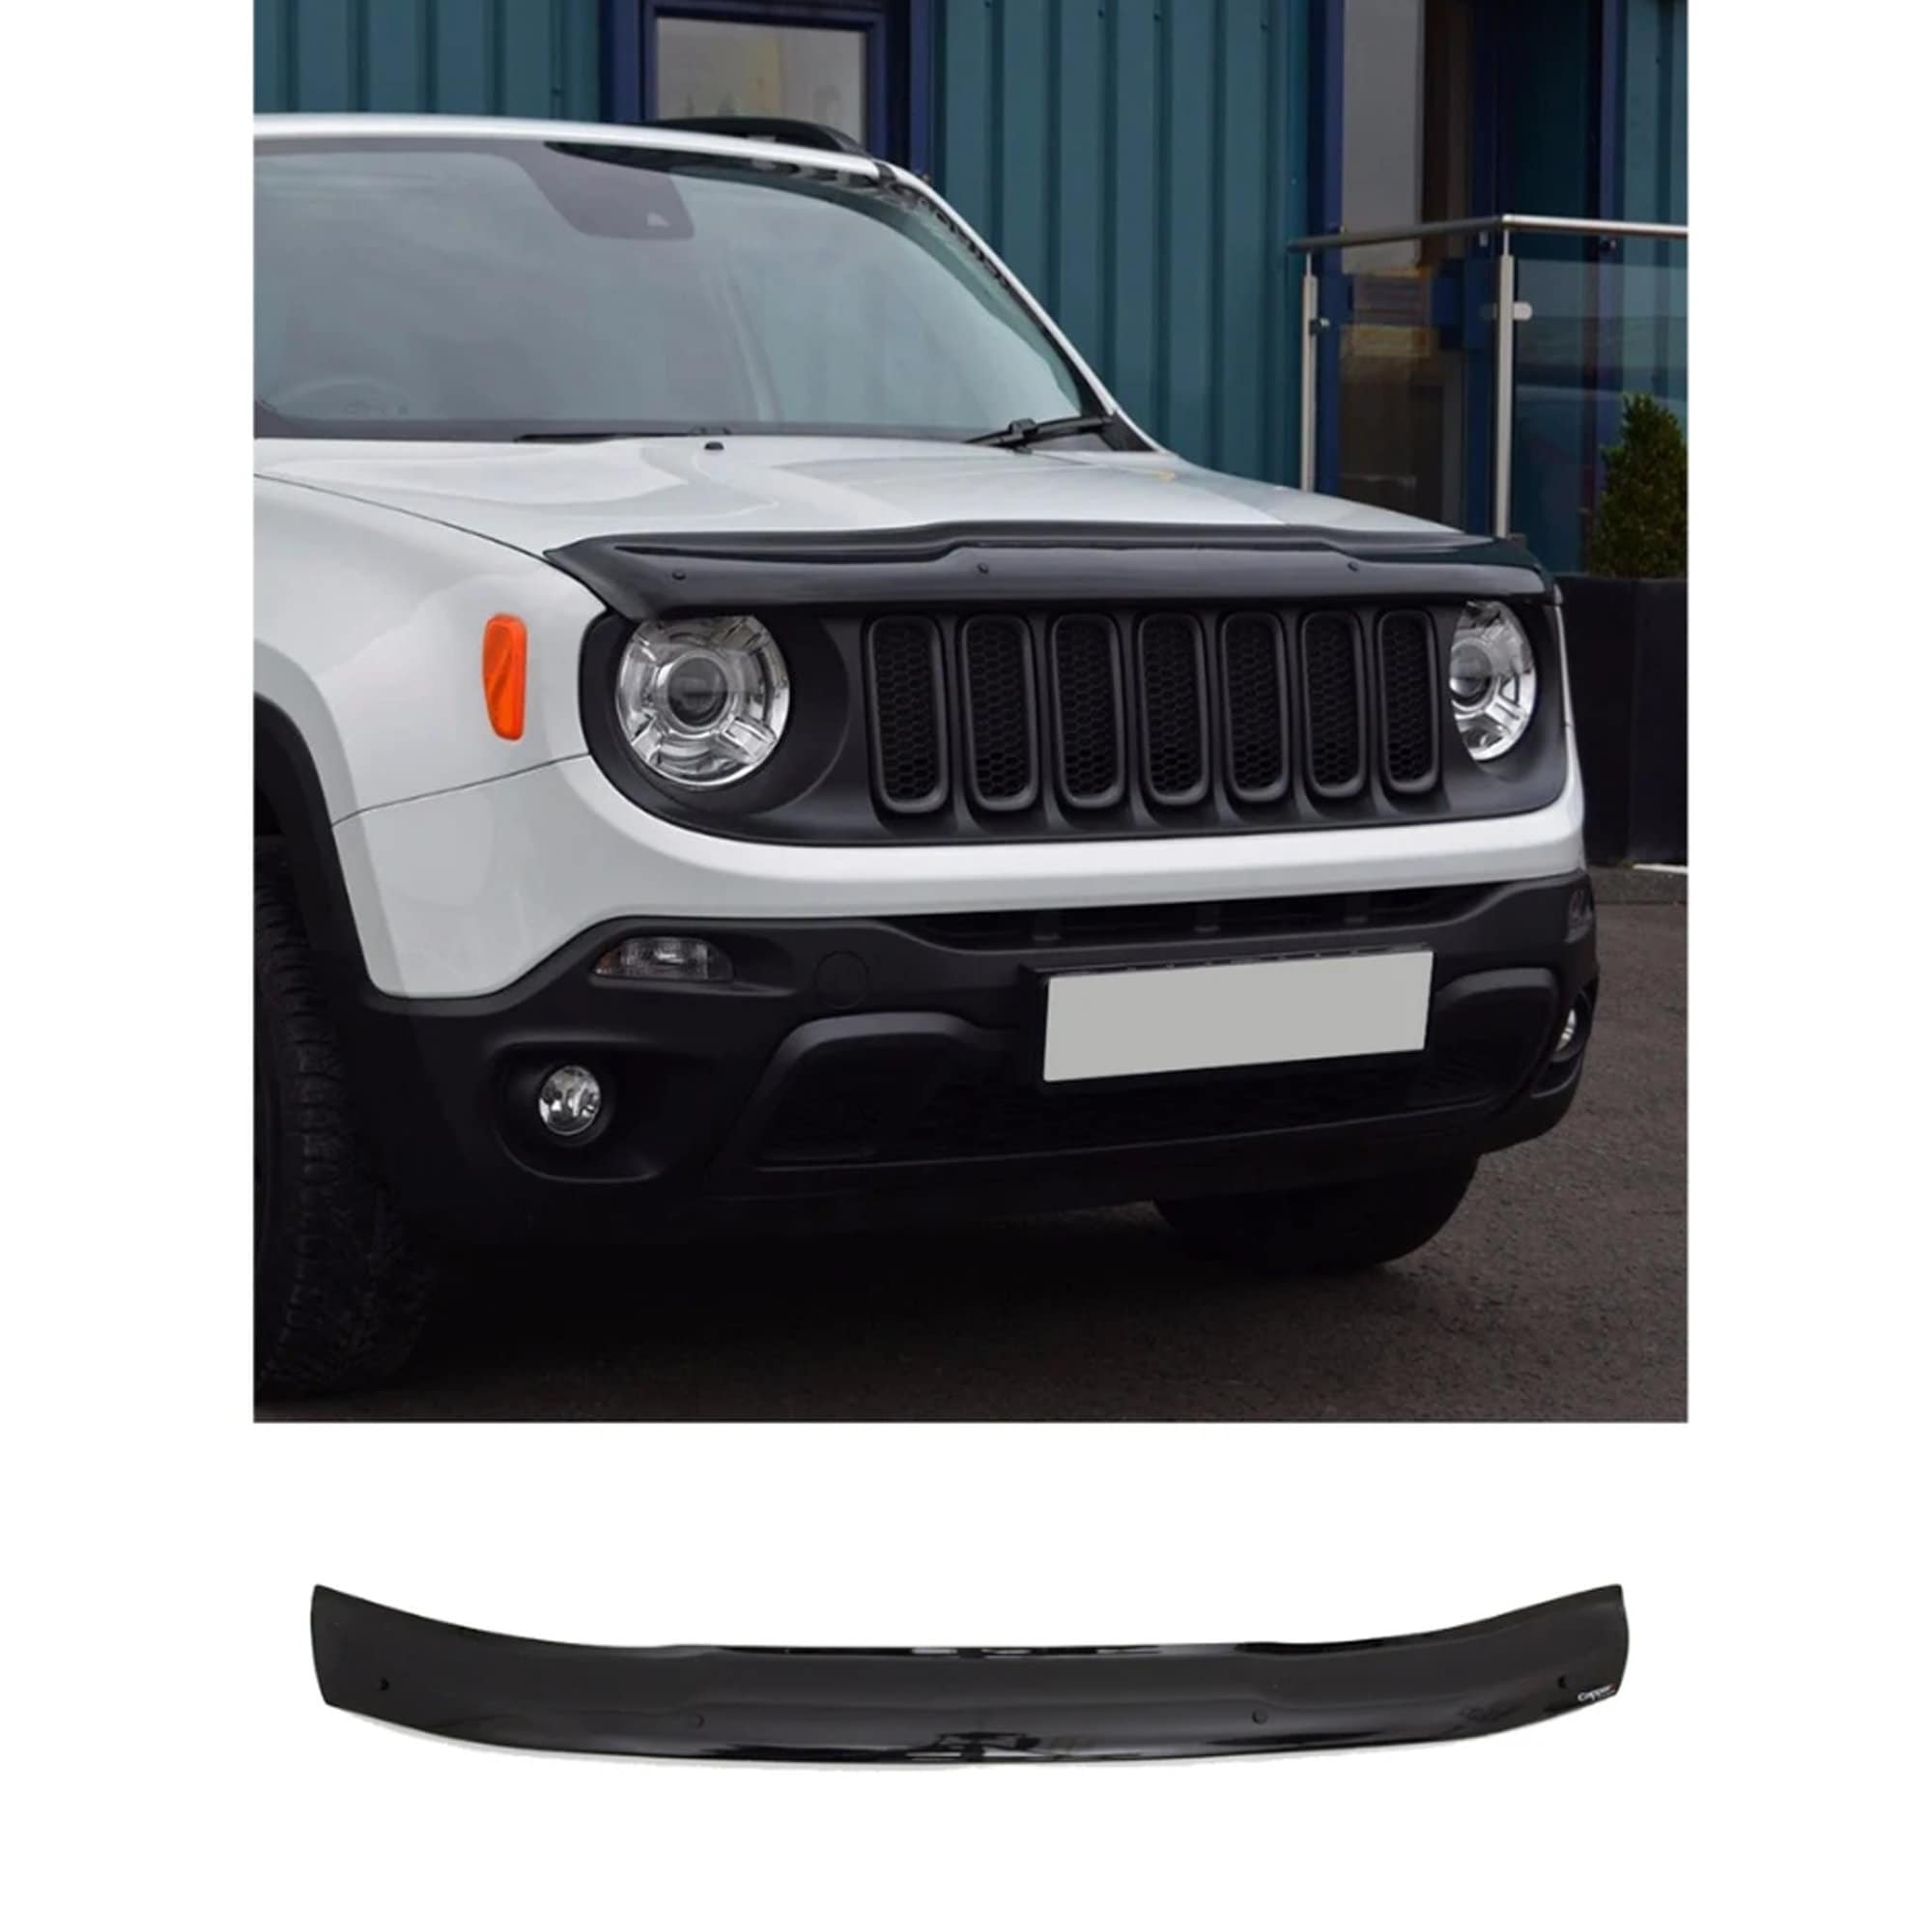 Kaufe ABS Nebelschlussleuchte Lampe Dekoration Aufkleber Schutz für Jeep  Renegade 2015-2018 Autozubehör, gesmokt schwarz